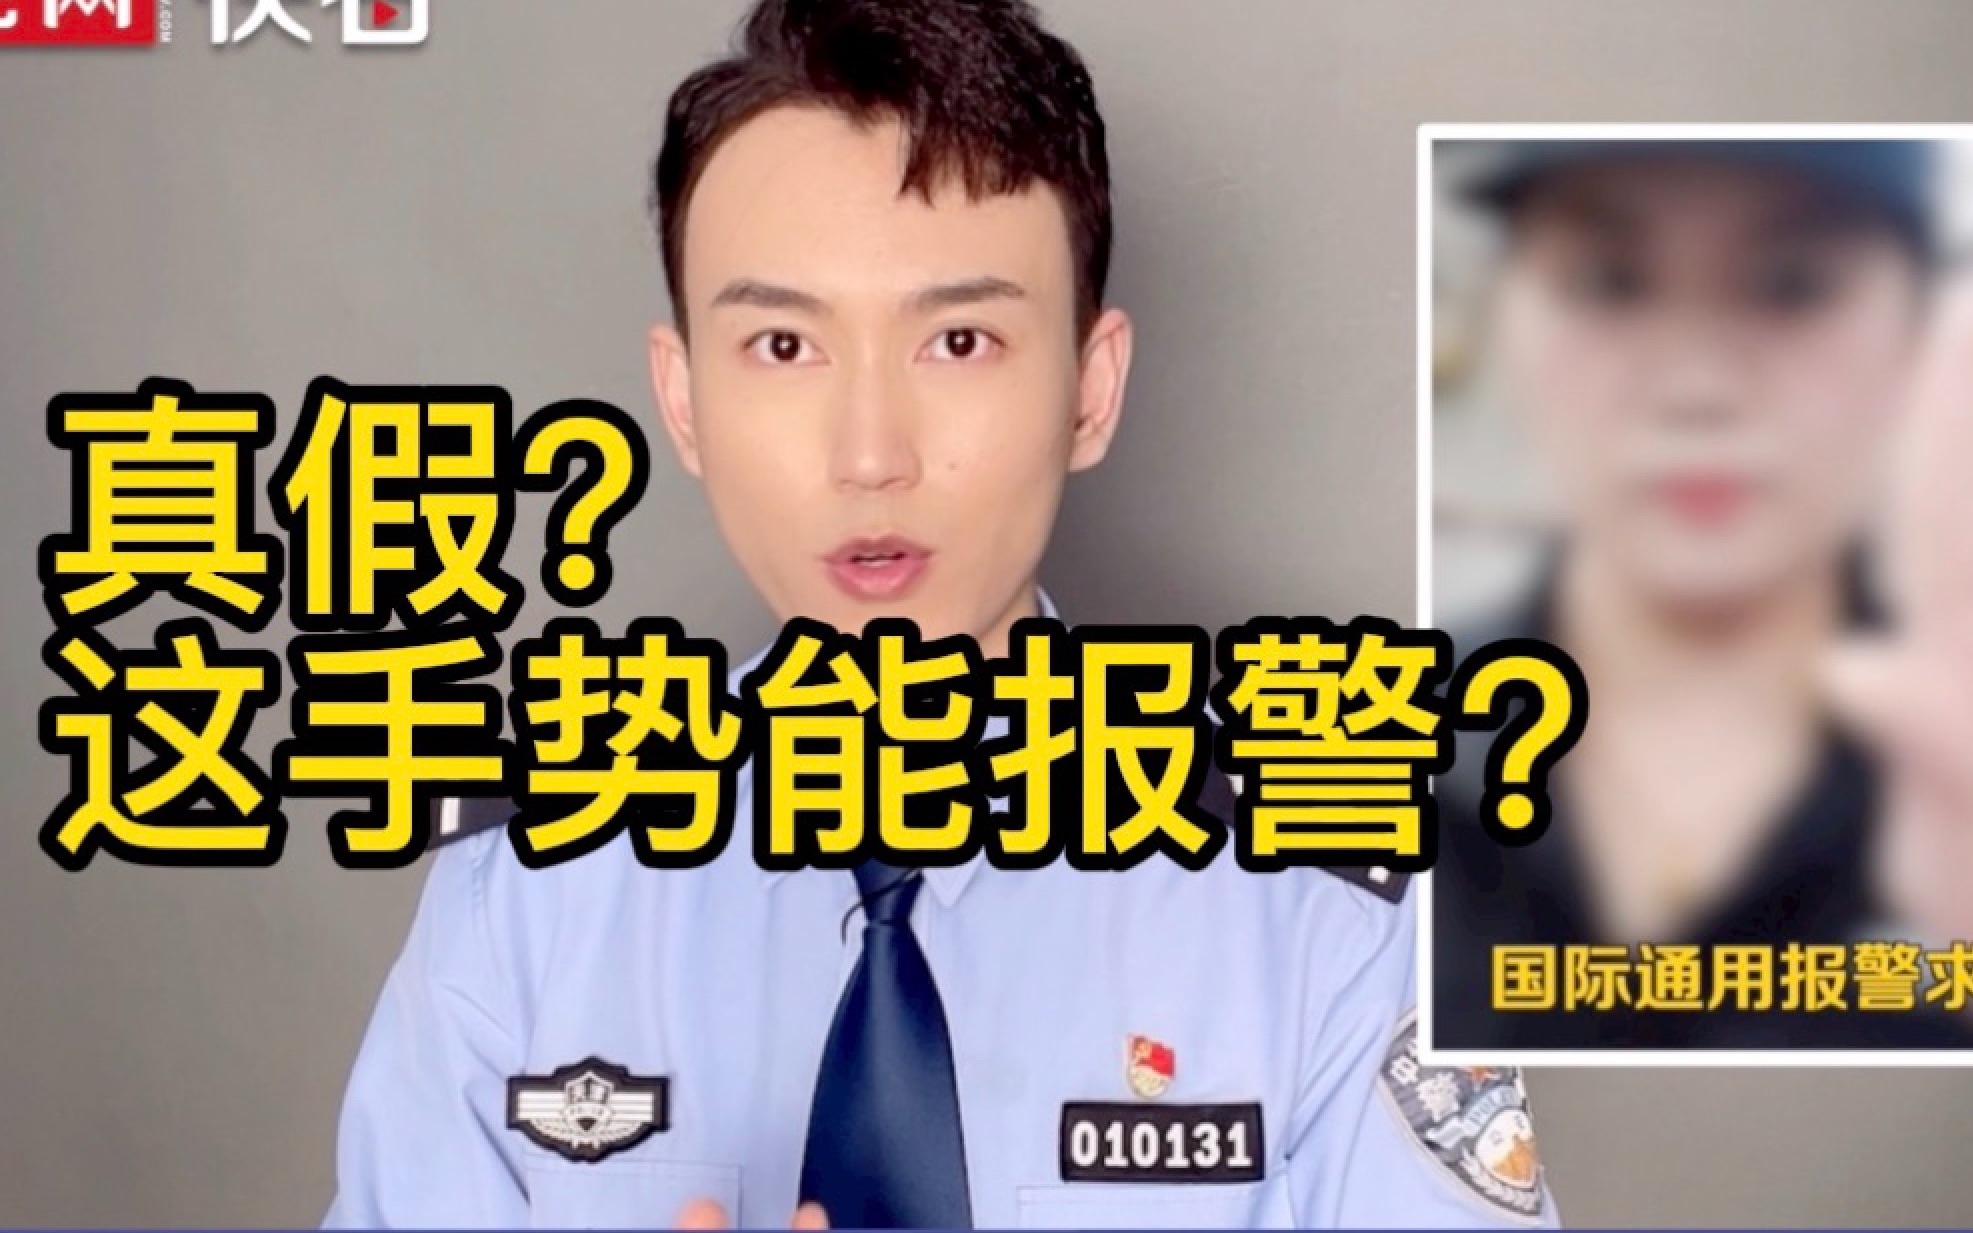 天津警察：“国际通用报警求助手势”千万别用！